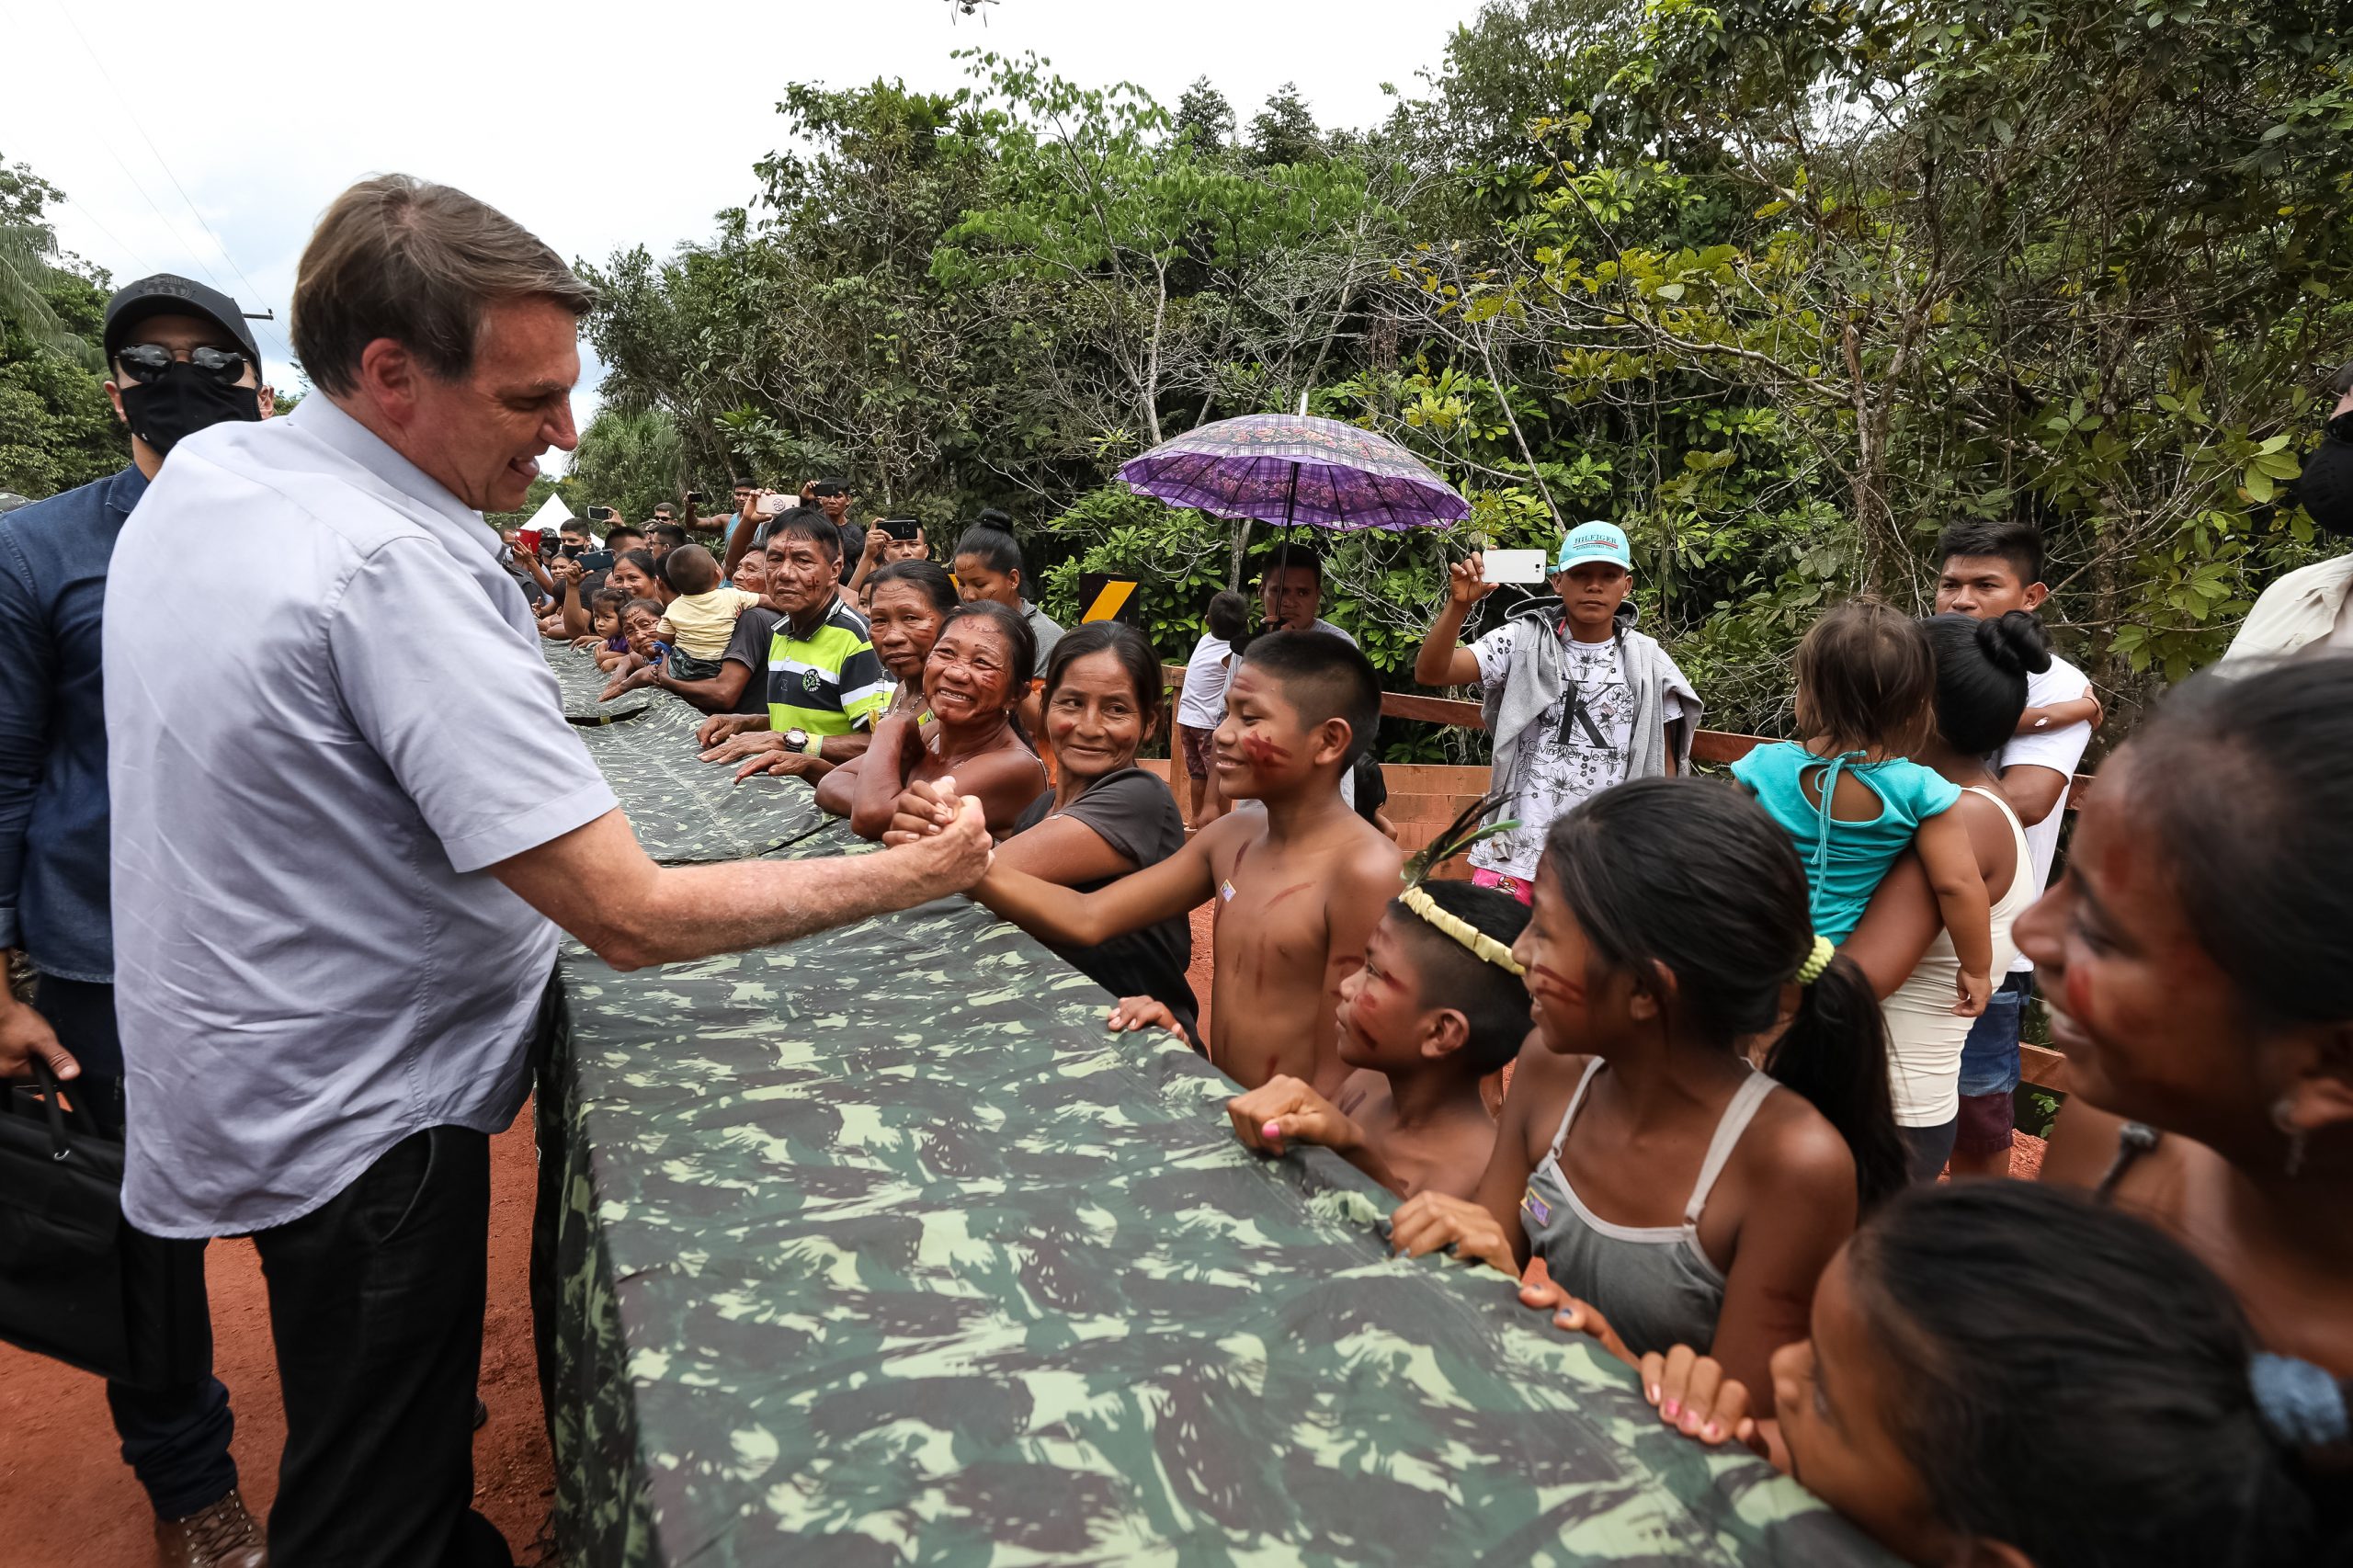 Sob clima de festa, indígenas recebem Bolsonaro com euforia e muitas fotos 4